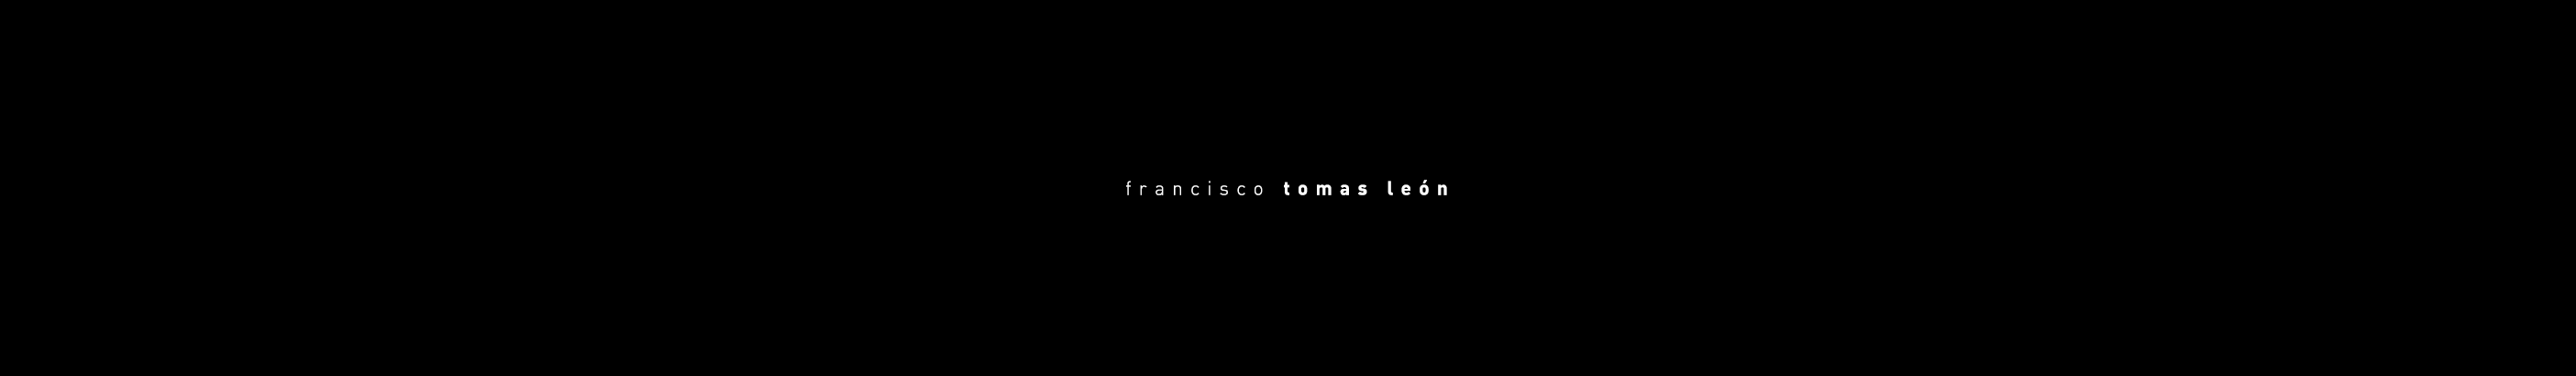 Francisco Tomas Leon profil başlığı